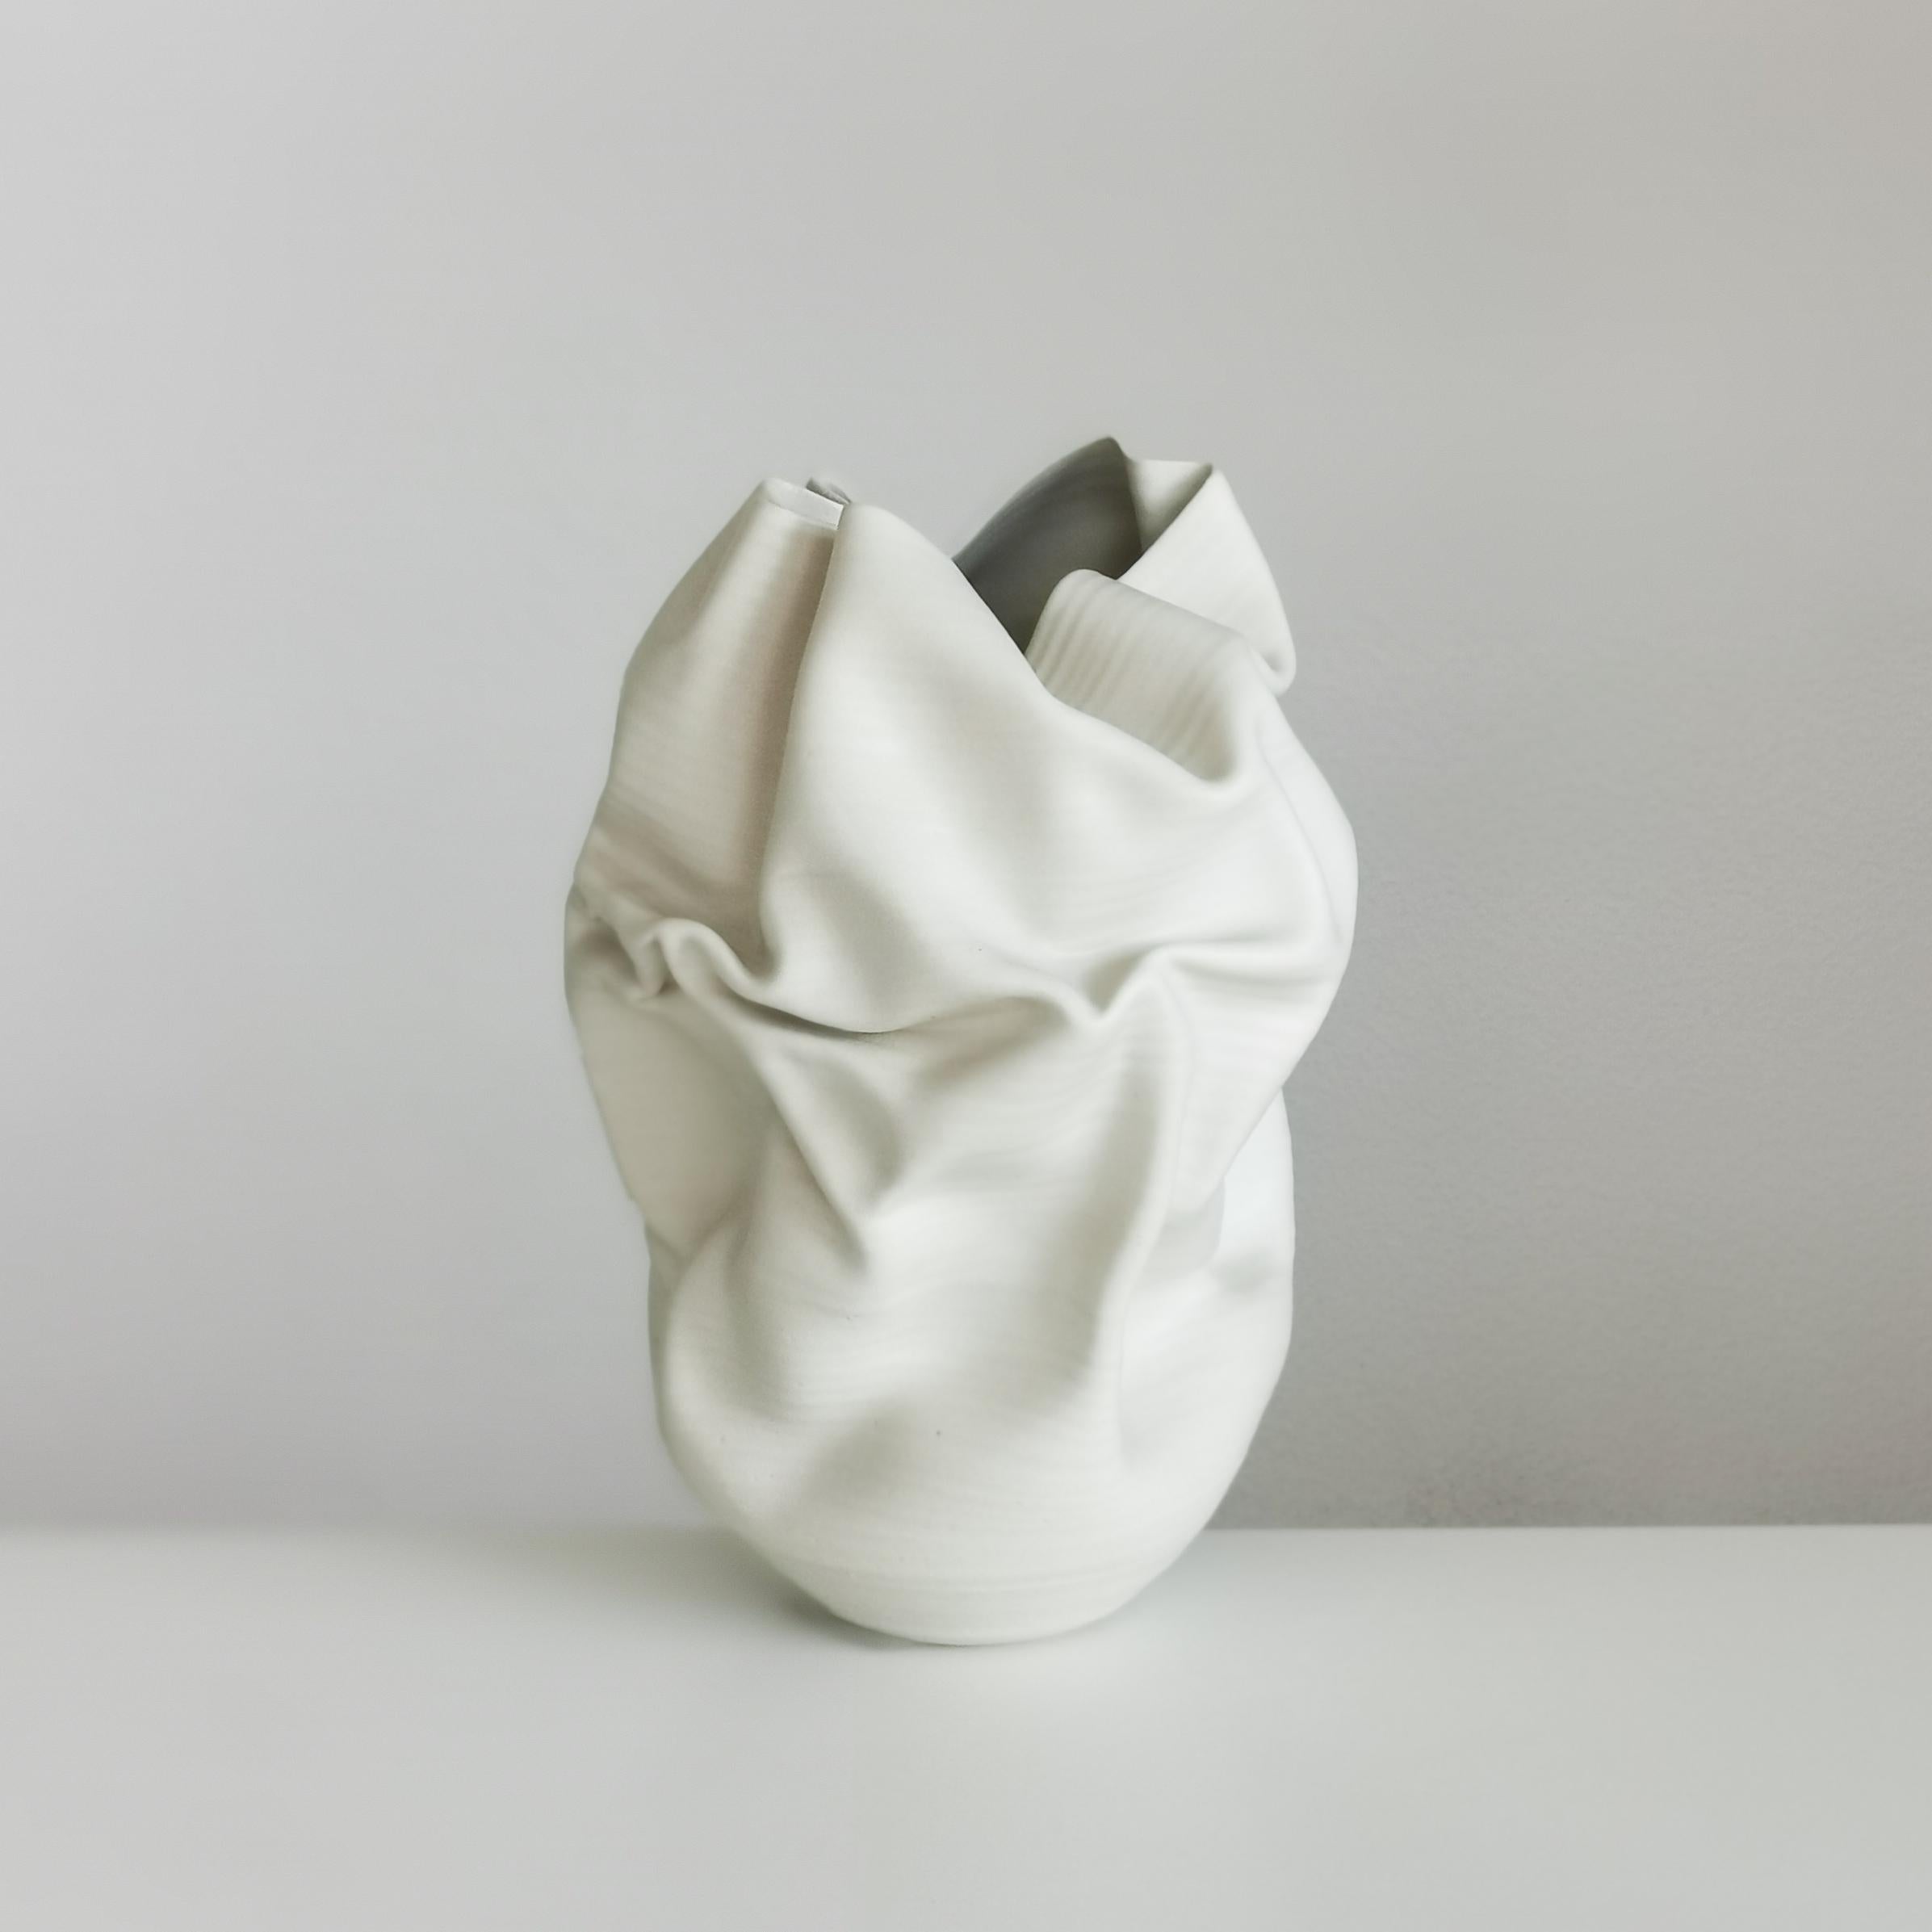 Medium Tall White Undulating Crumpled Form, Unique Ceramic Sculpture Vessel N.51 1